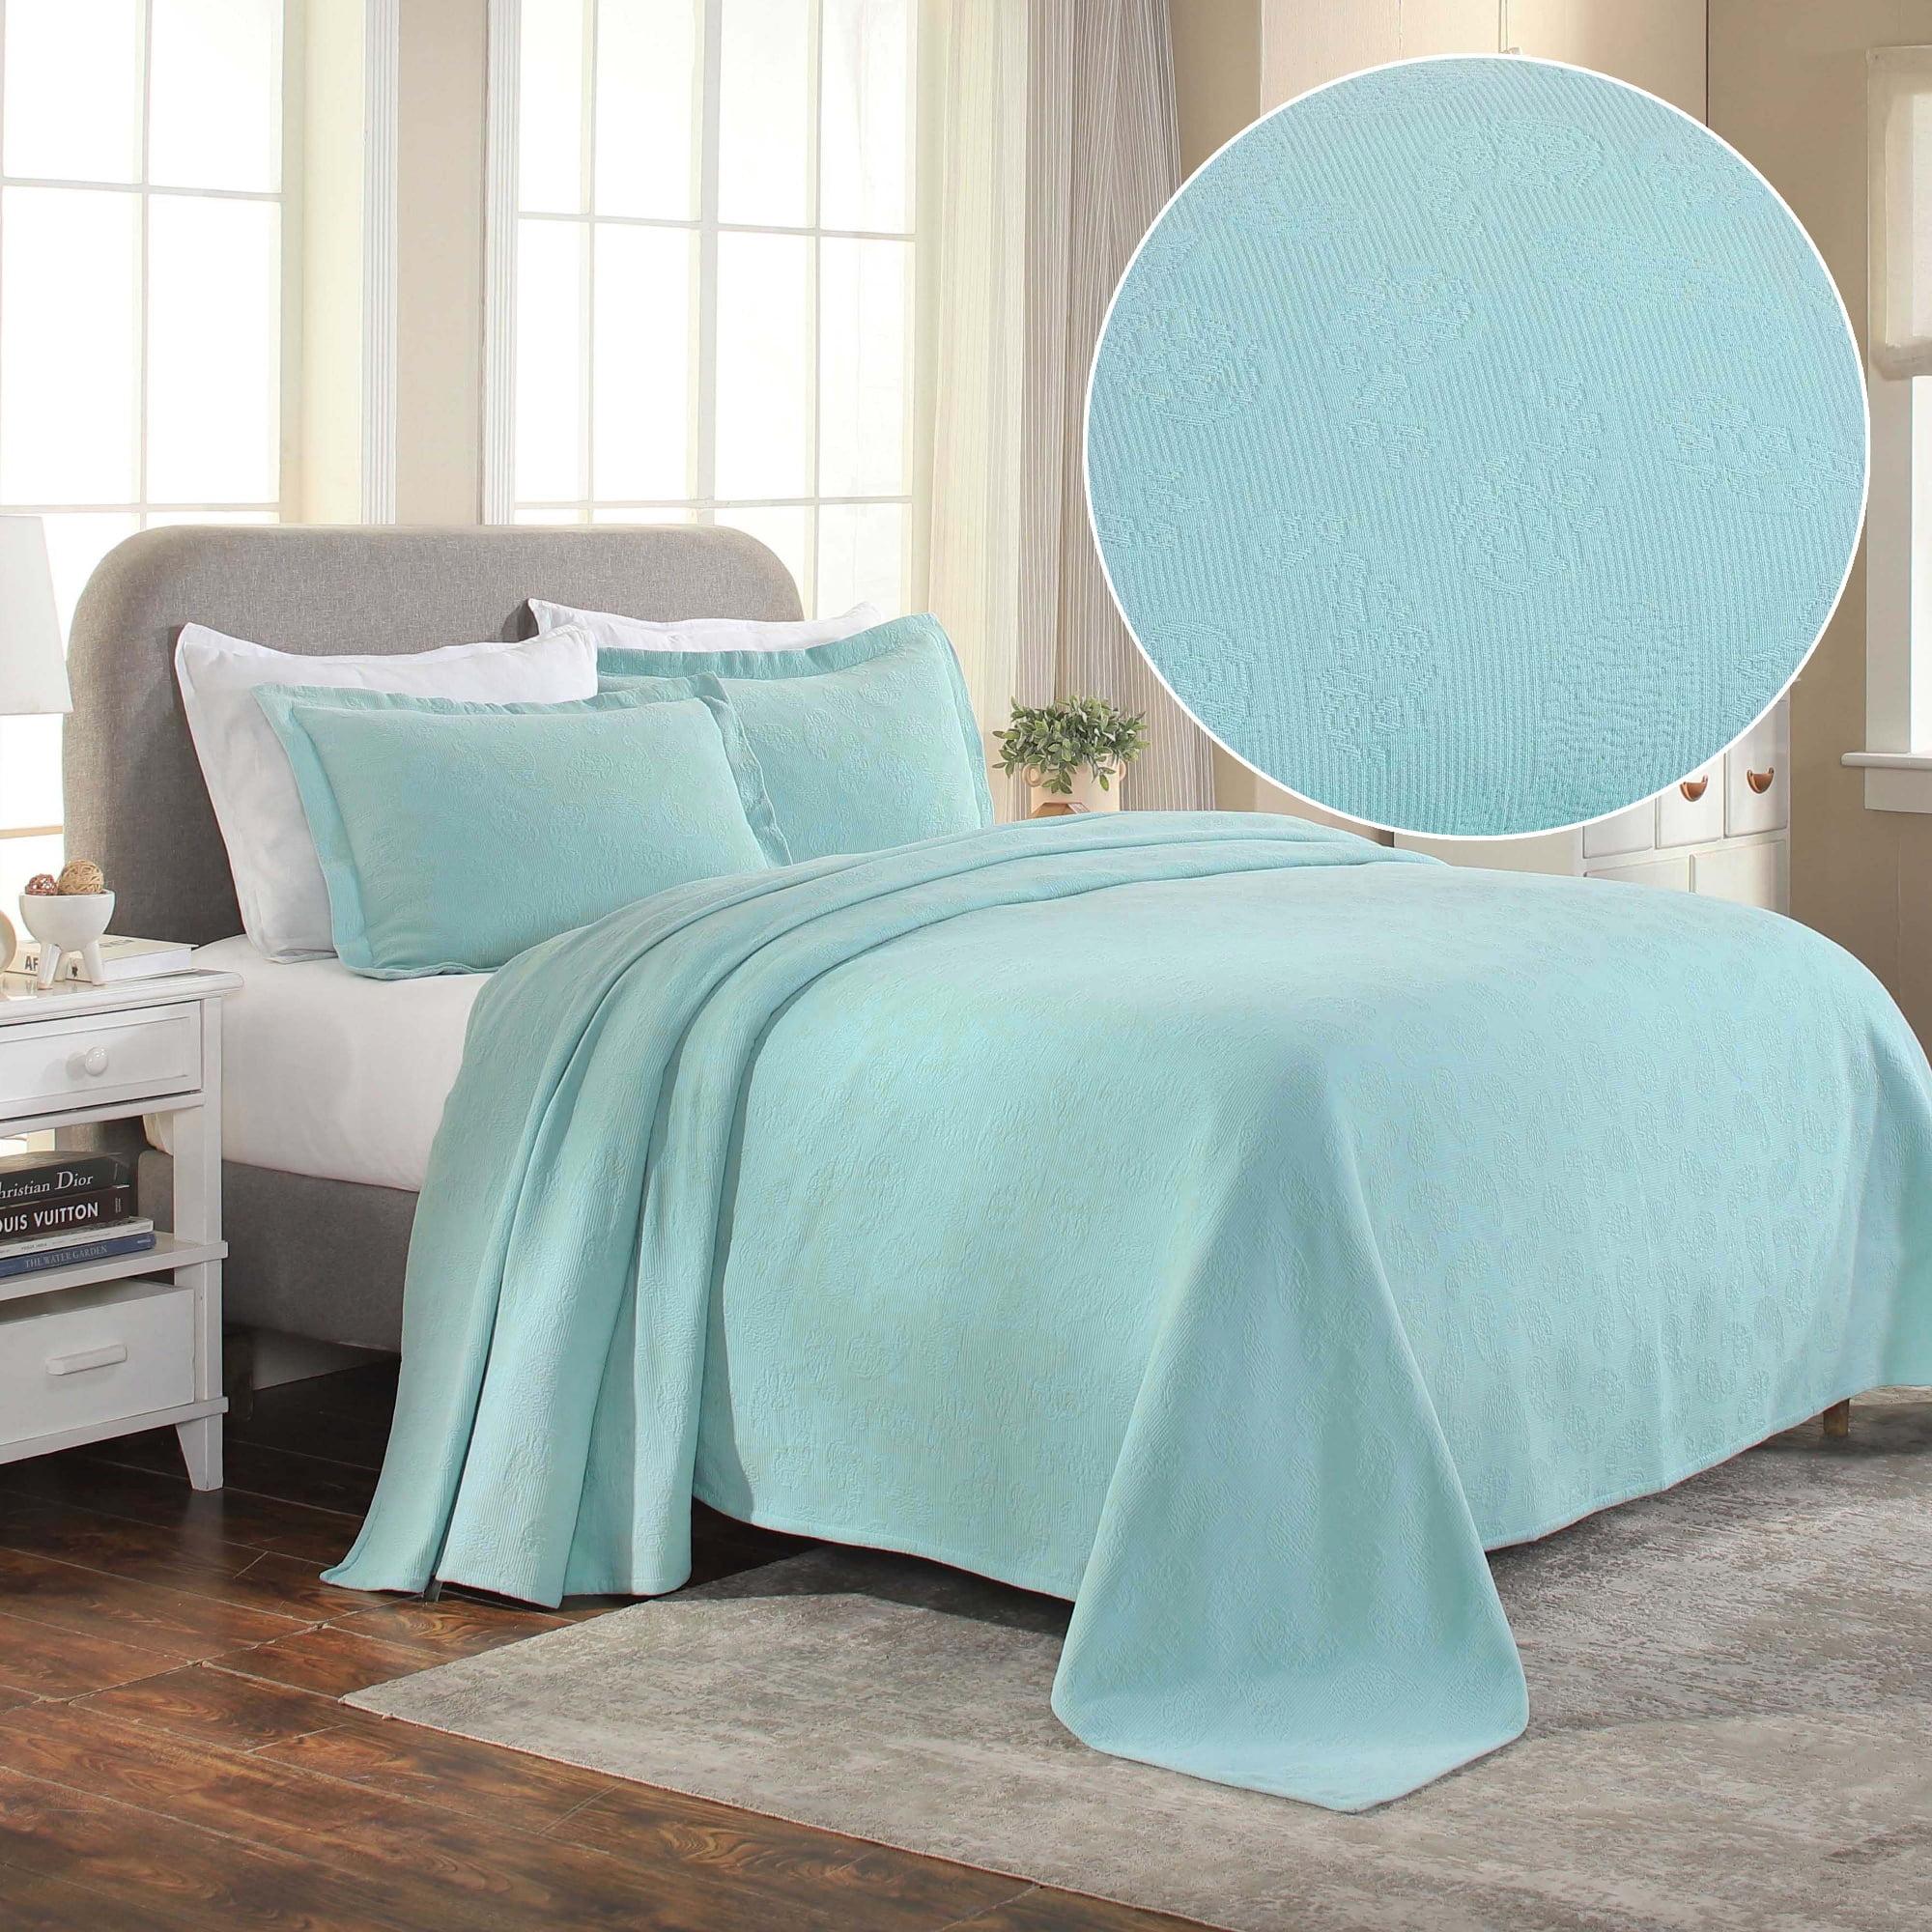 Aqua Paisley Cotton King Bedspread Set with Cozy Matelassé Design